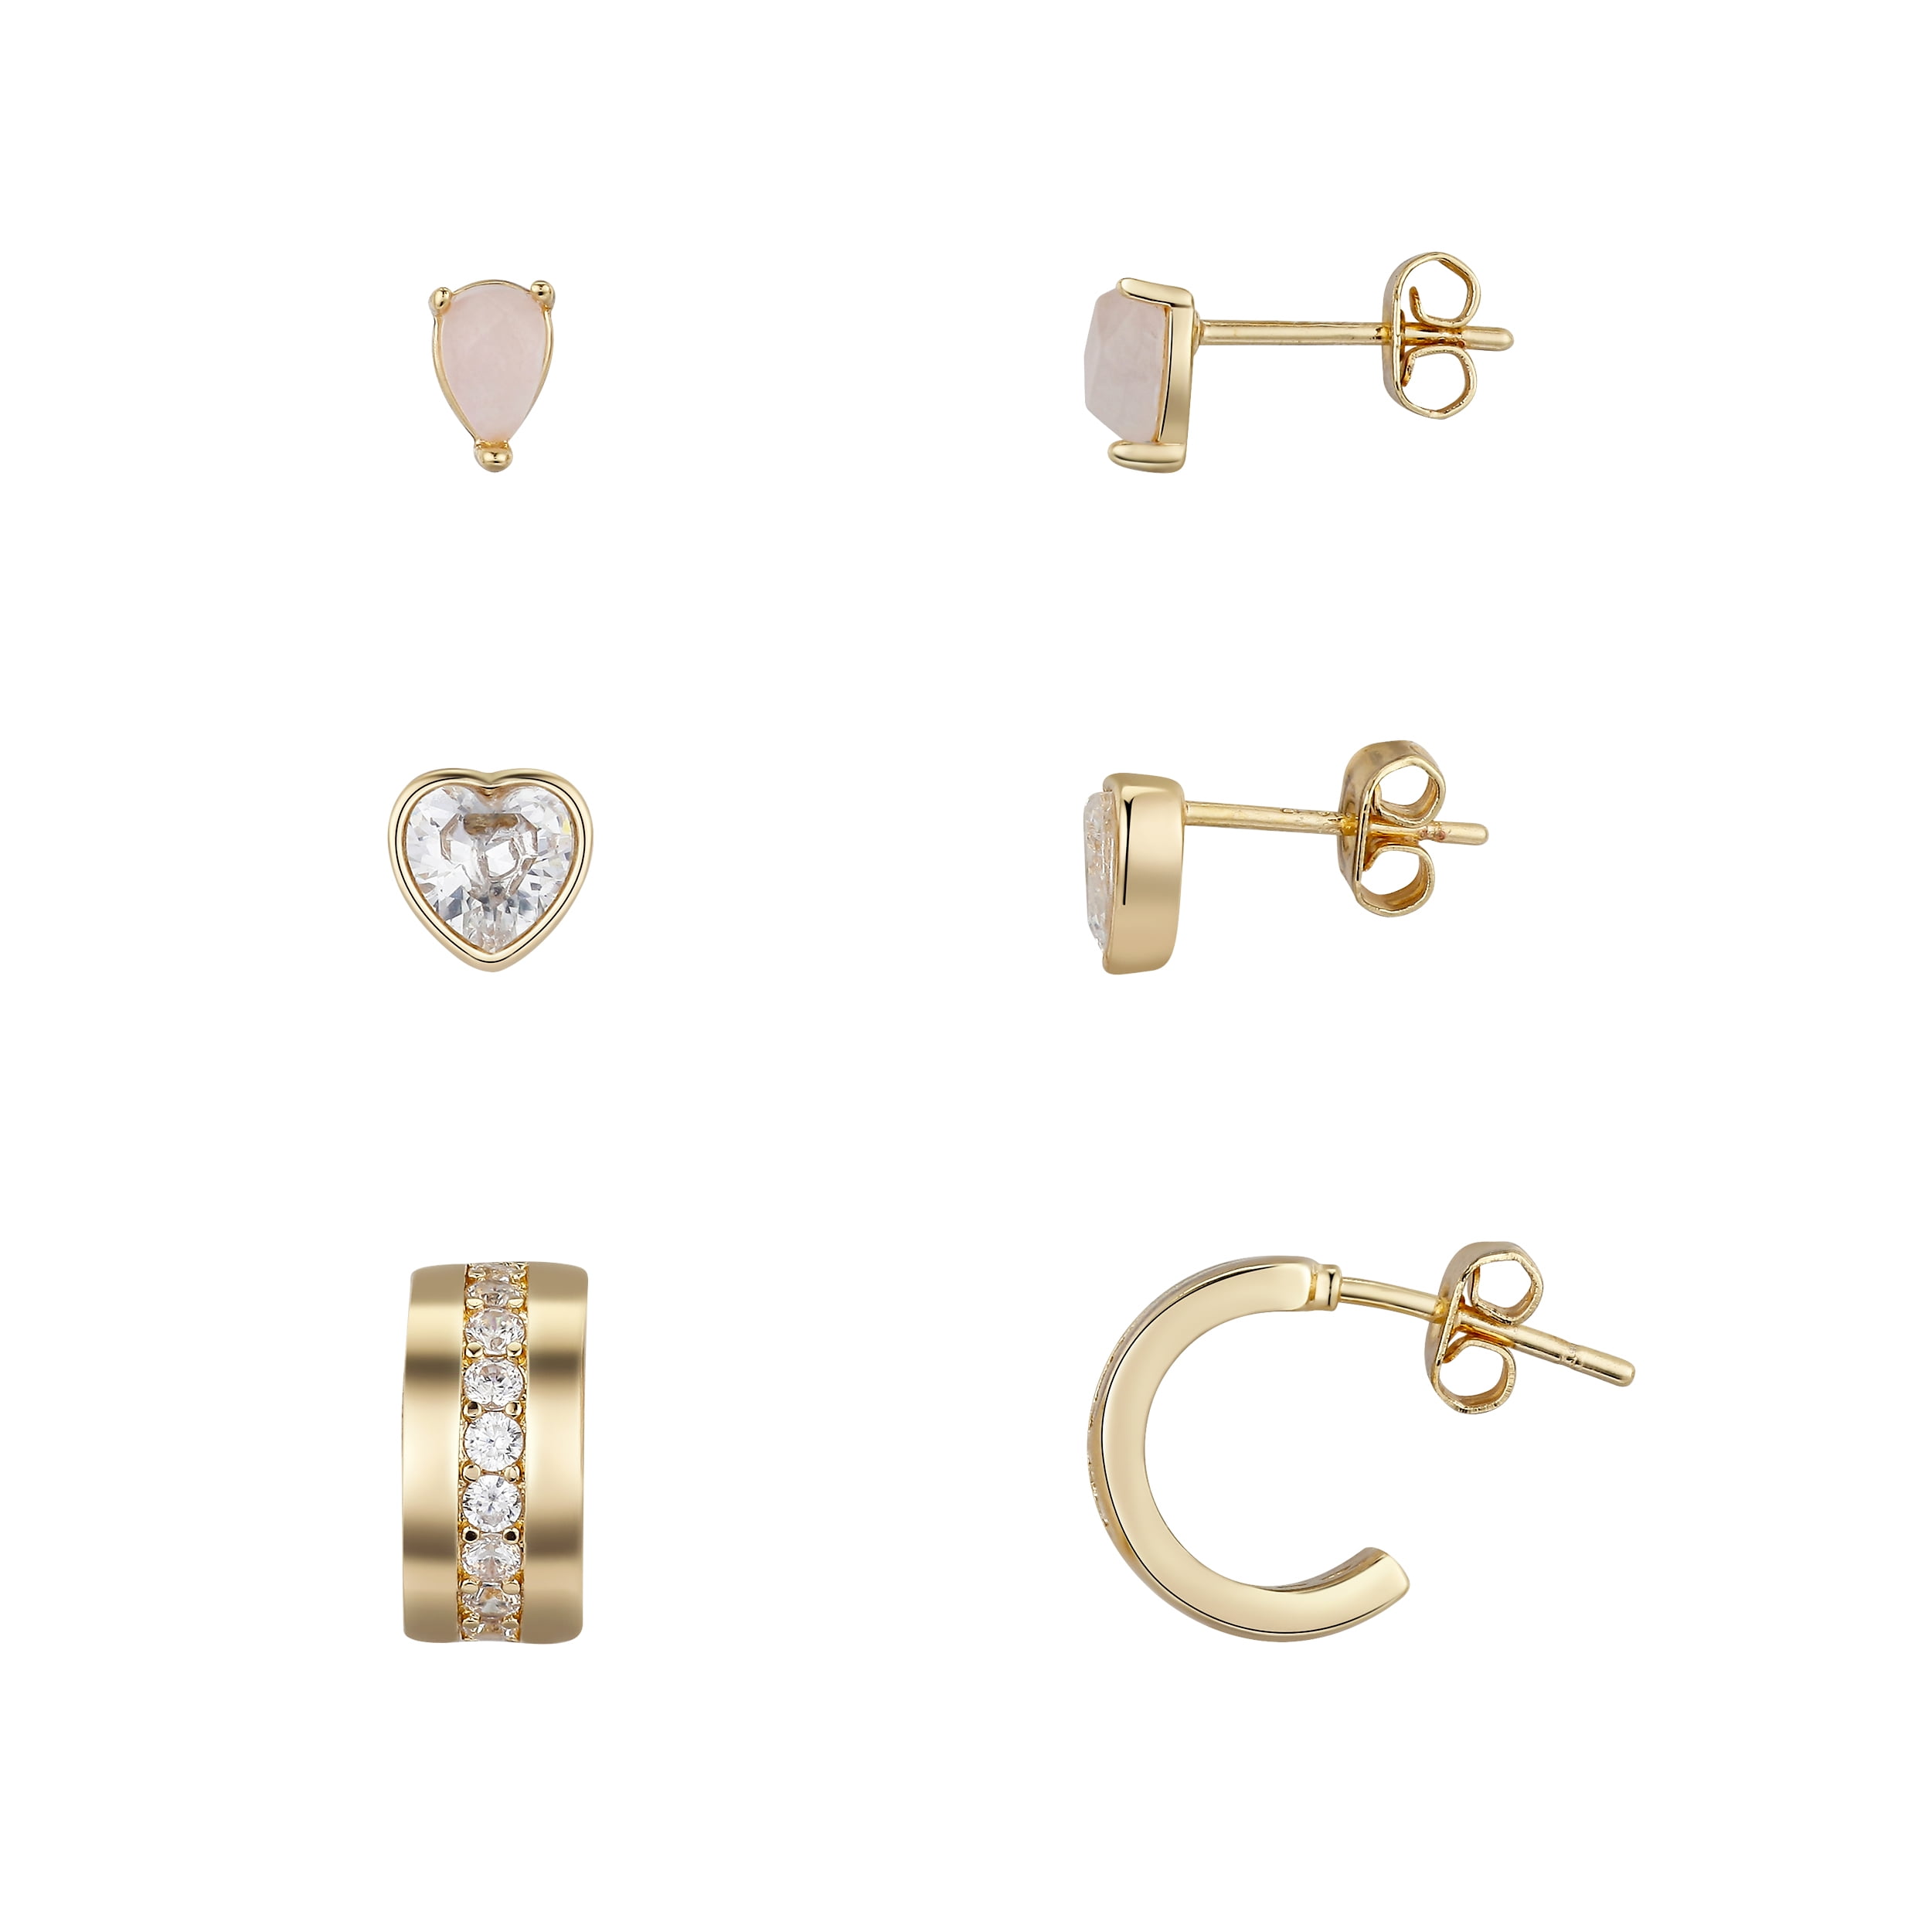 Earrings Set,Gold Earrings Set,18K Gold Hoop Earrings Set,Handmade Dainty Gold Earrings,Glitter Colored Zircon Earrings,Mix Match Earrings